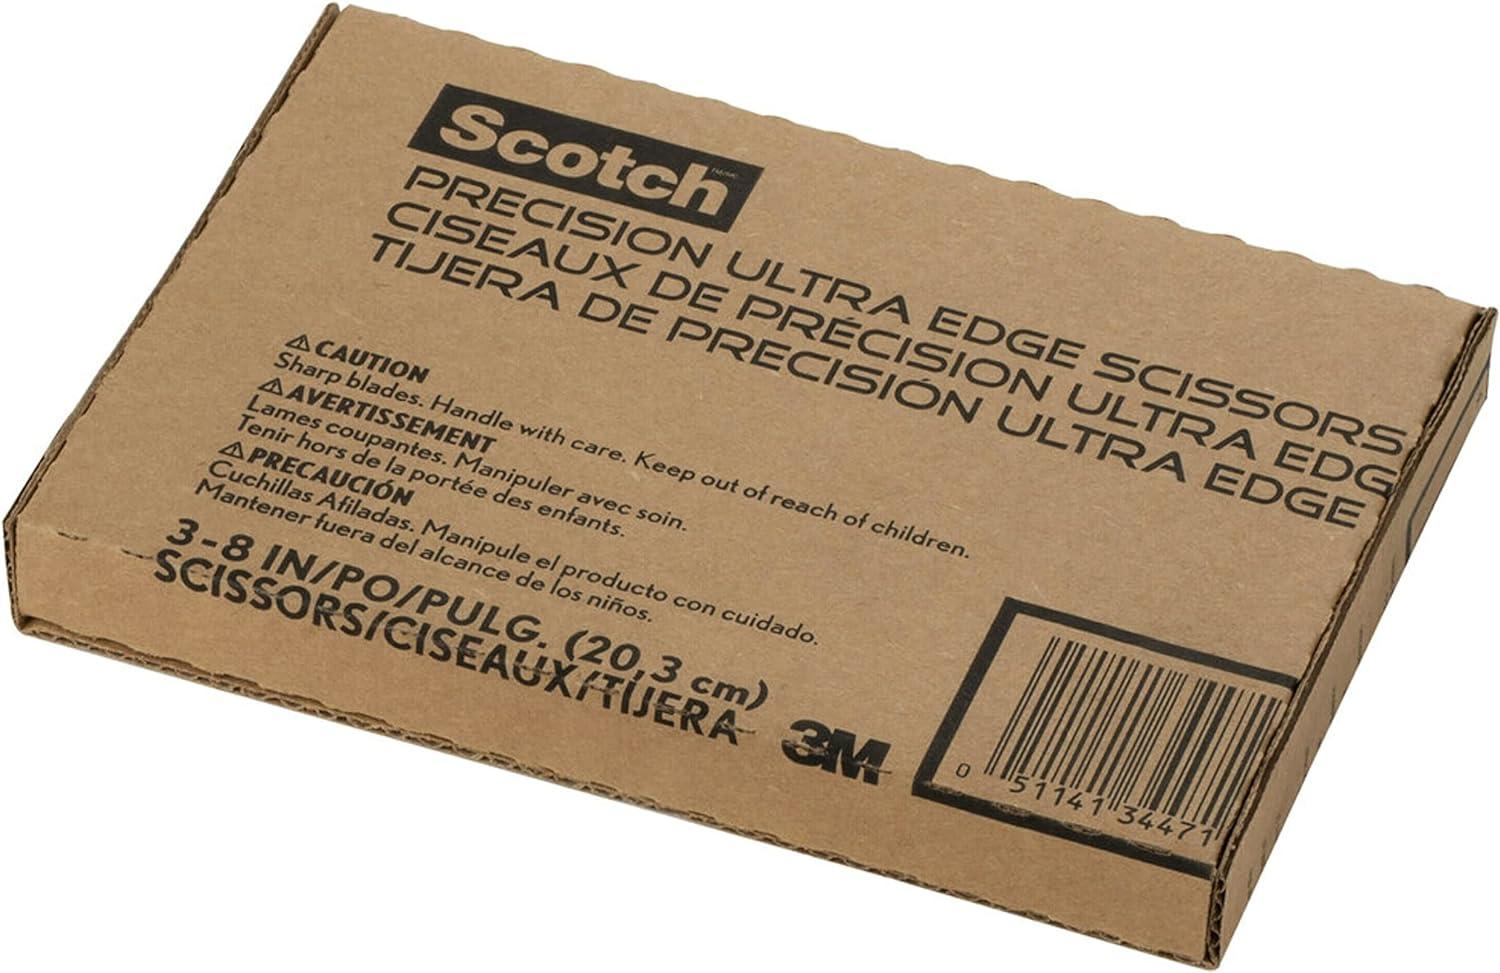  Scotch 8 Precision Ultra Edge Non-Stick Scissors, 3